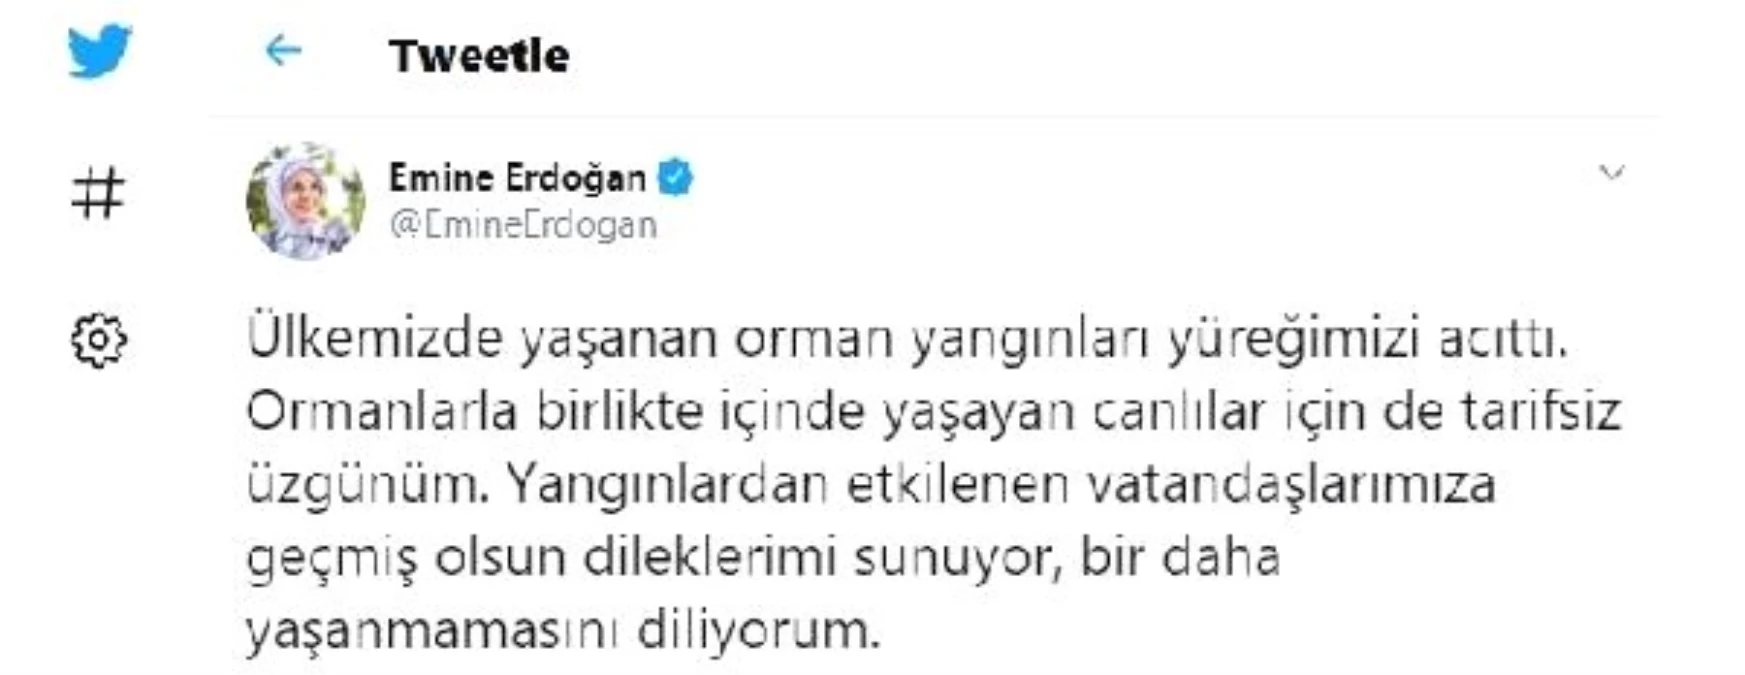 Son dakika haber! Emine Erdoğan: Orman yangınları yüreğimizi acıttı